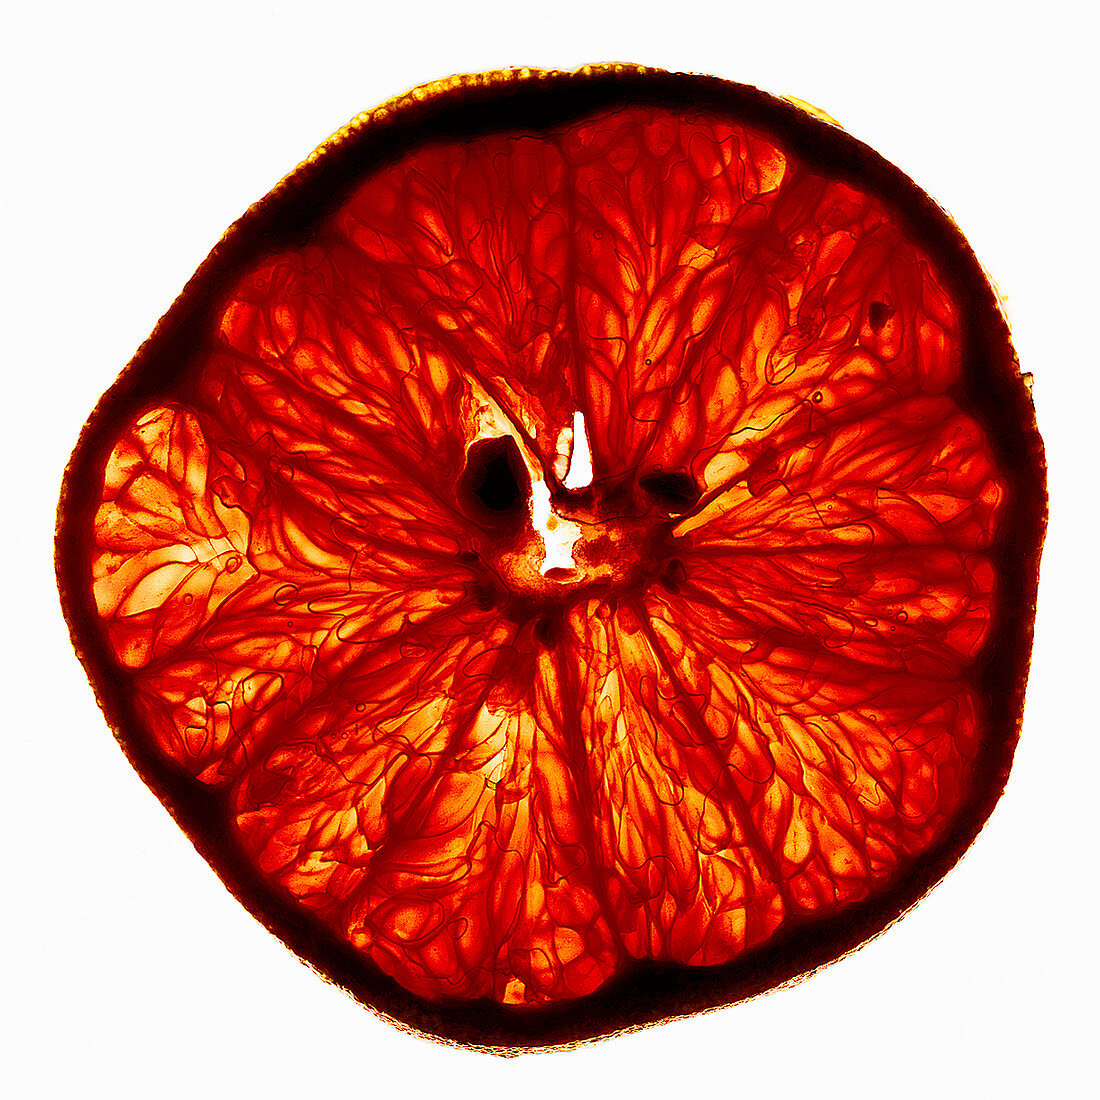 A backlit grapefruit slice